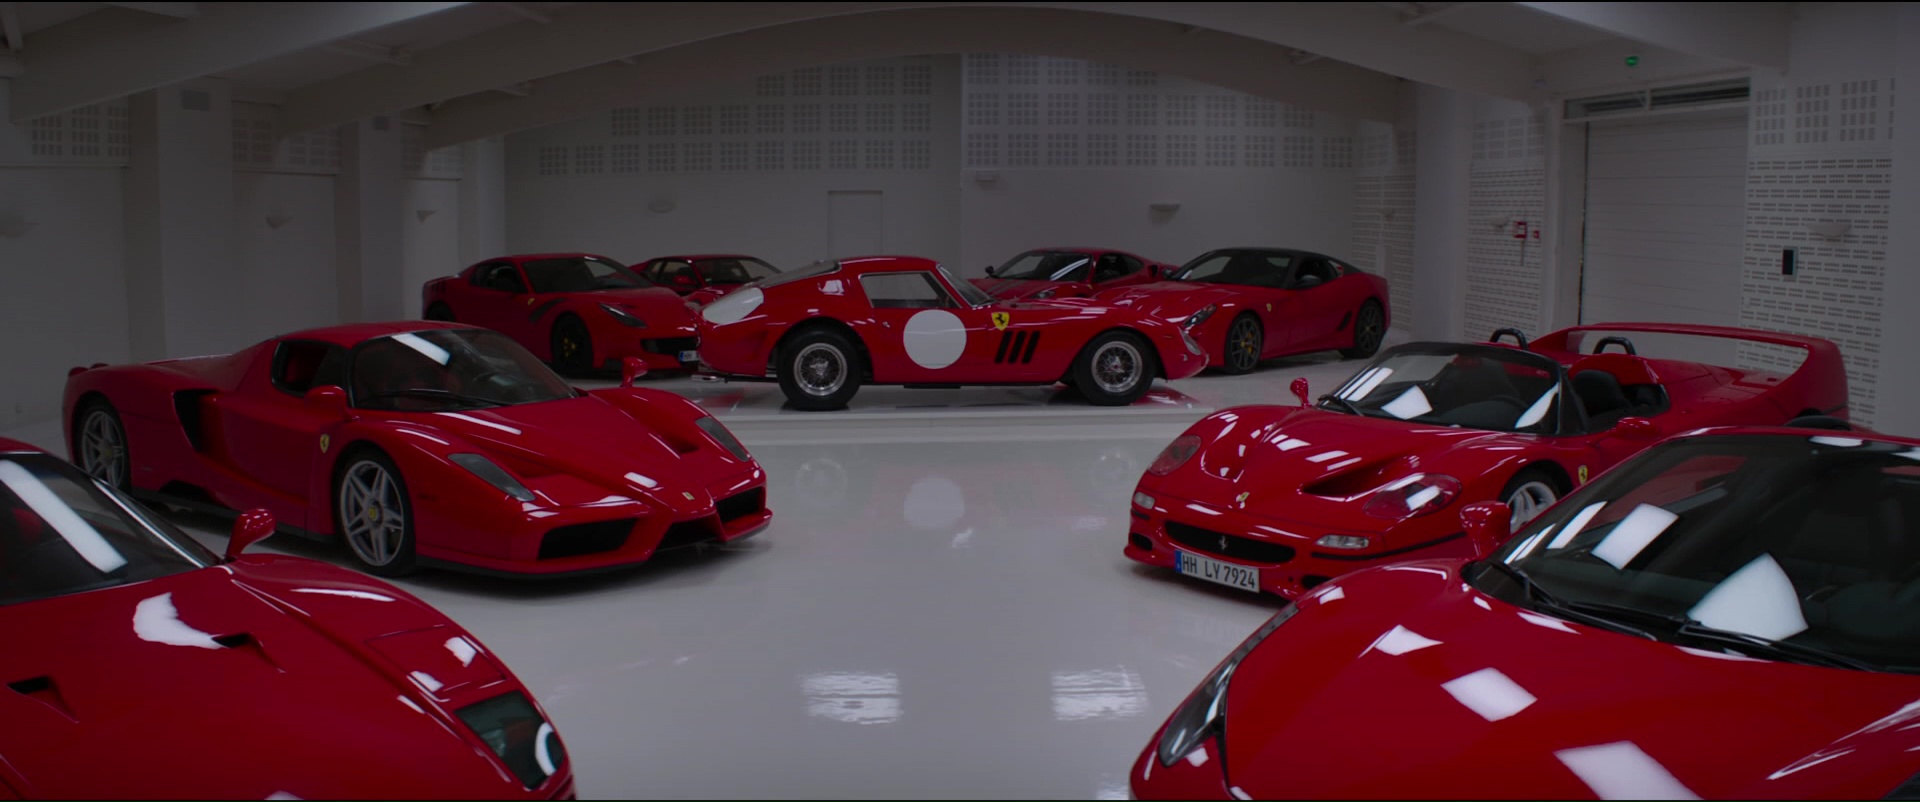 Ferrari Cars in Overdrive (2017) Movie1920 x 802